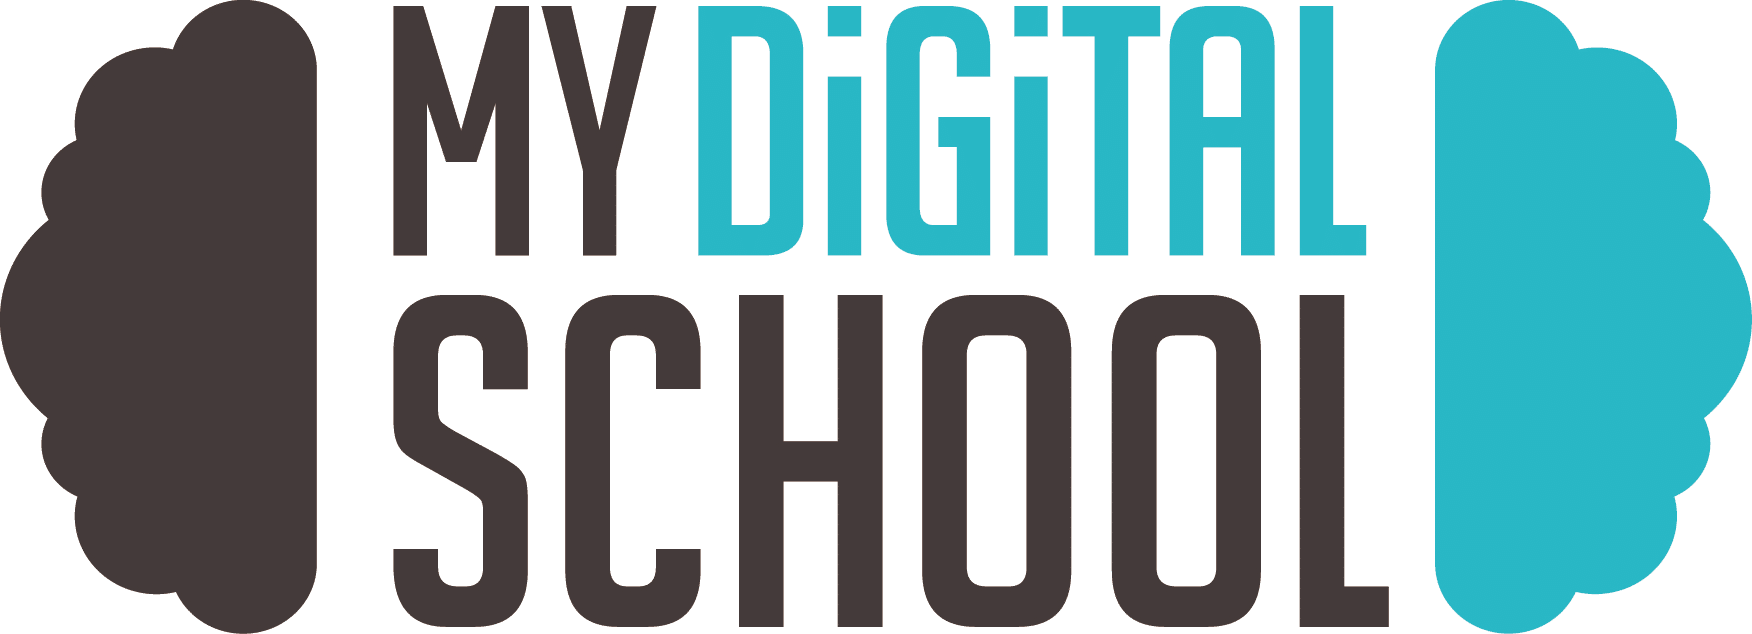 logo my digital school